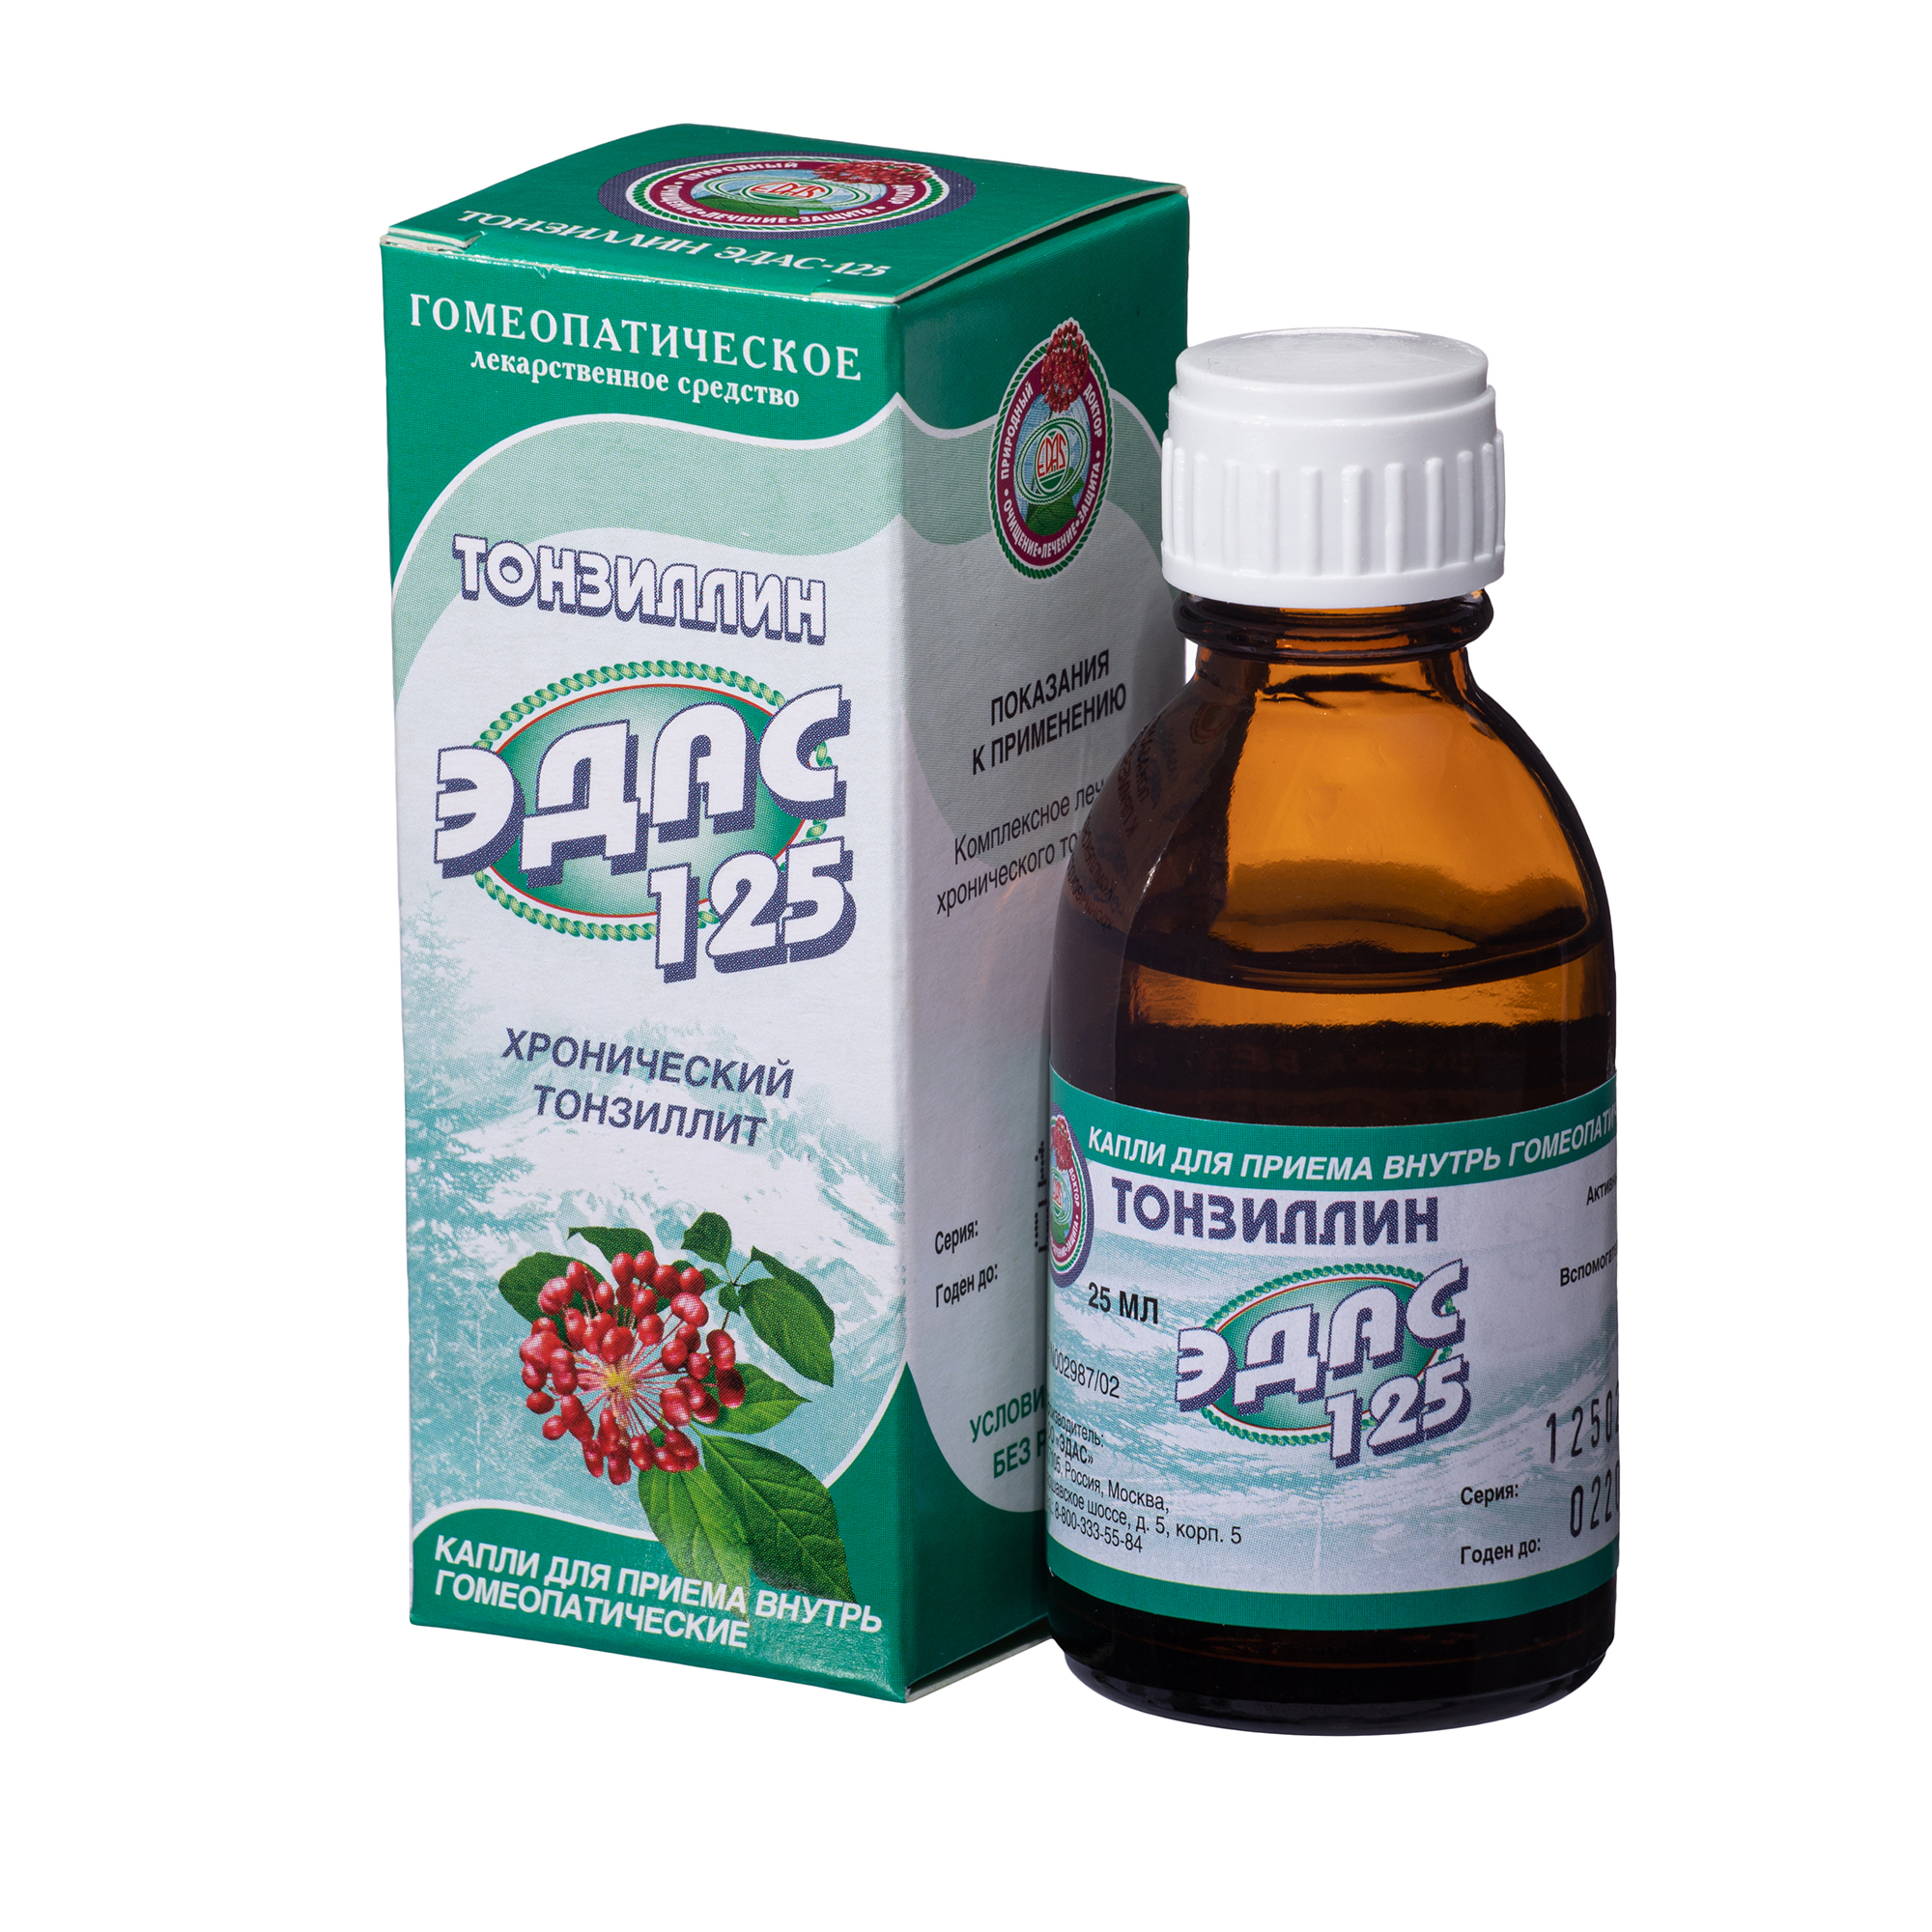 Тонзиллин Эдас-125, для лечения хронического тонзиллита, капли гом. 25 мл на всемирном поприще петербург париж милан